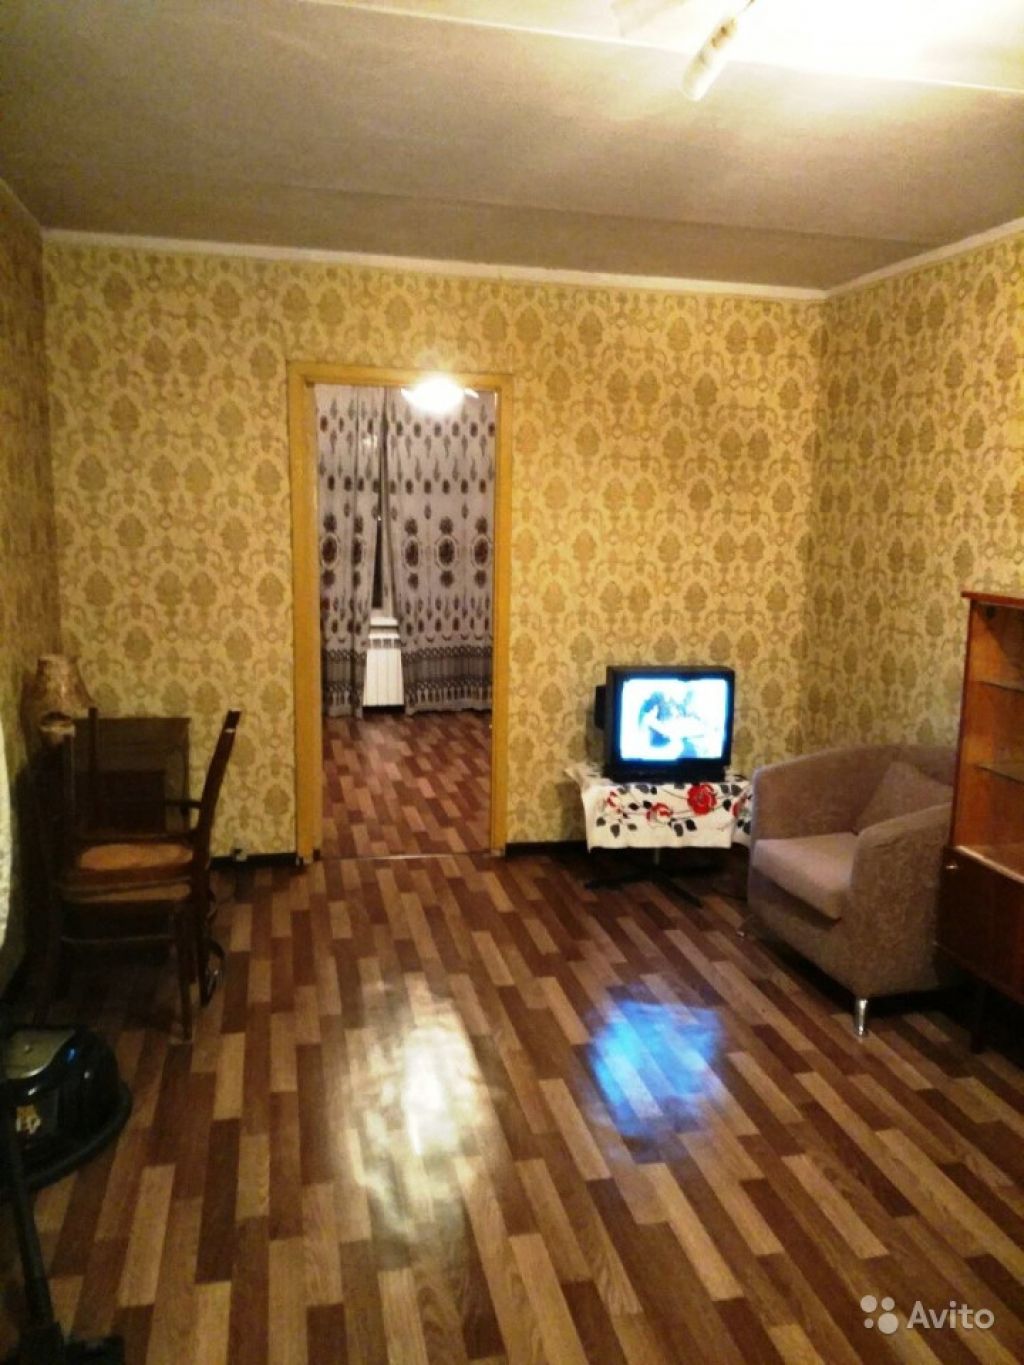 Сдам квартиру 3-к квартира 57 м² на 2 этаже 12-этажного панельного дома в Москве. Фото 1